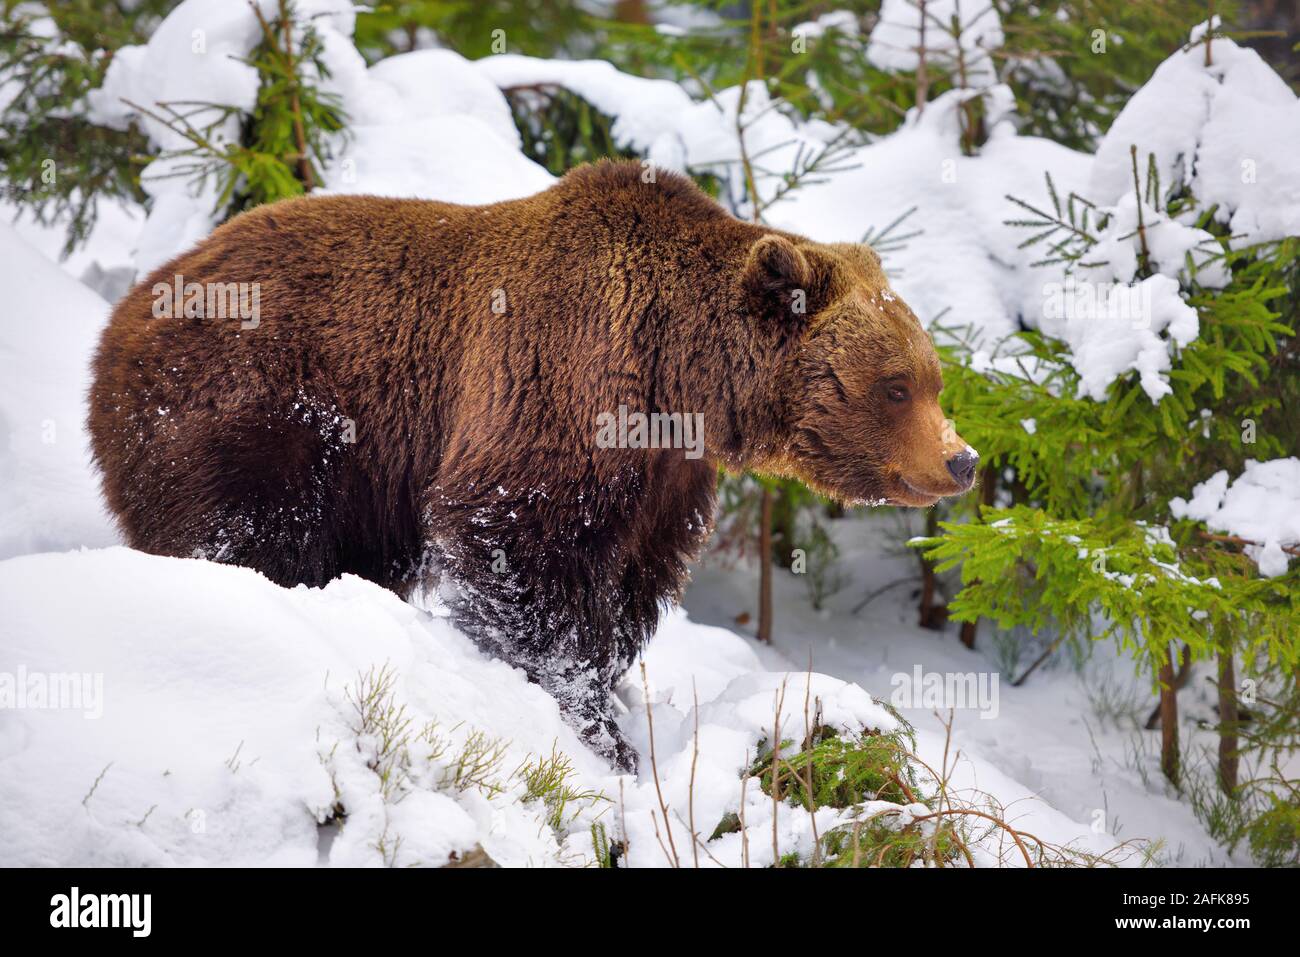 L'ours brun (Ursus arctos) dans son habitat naturel Banque D'Images